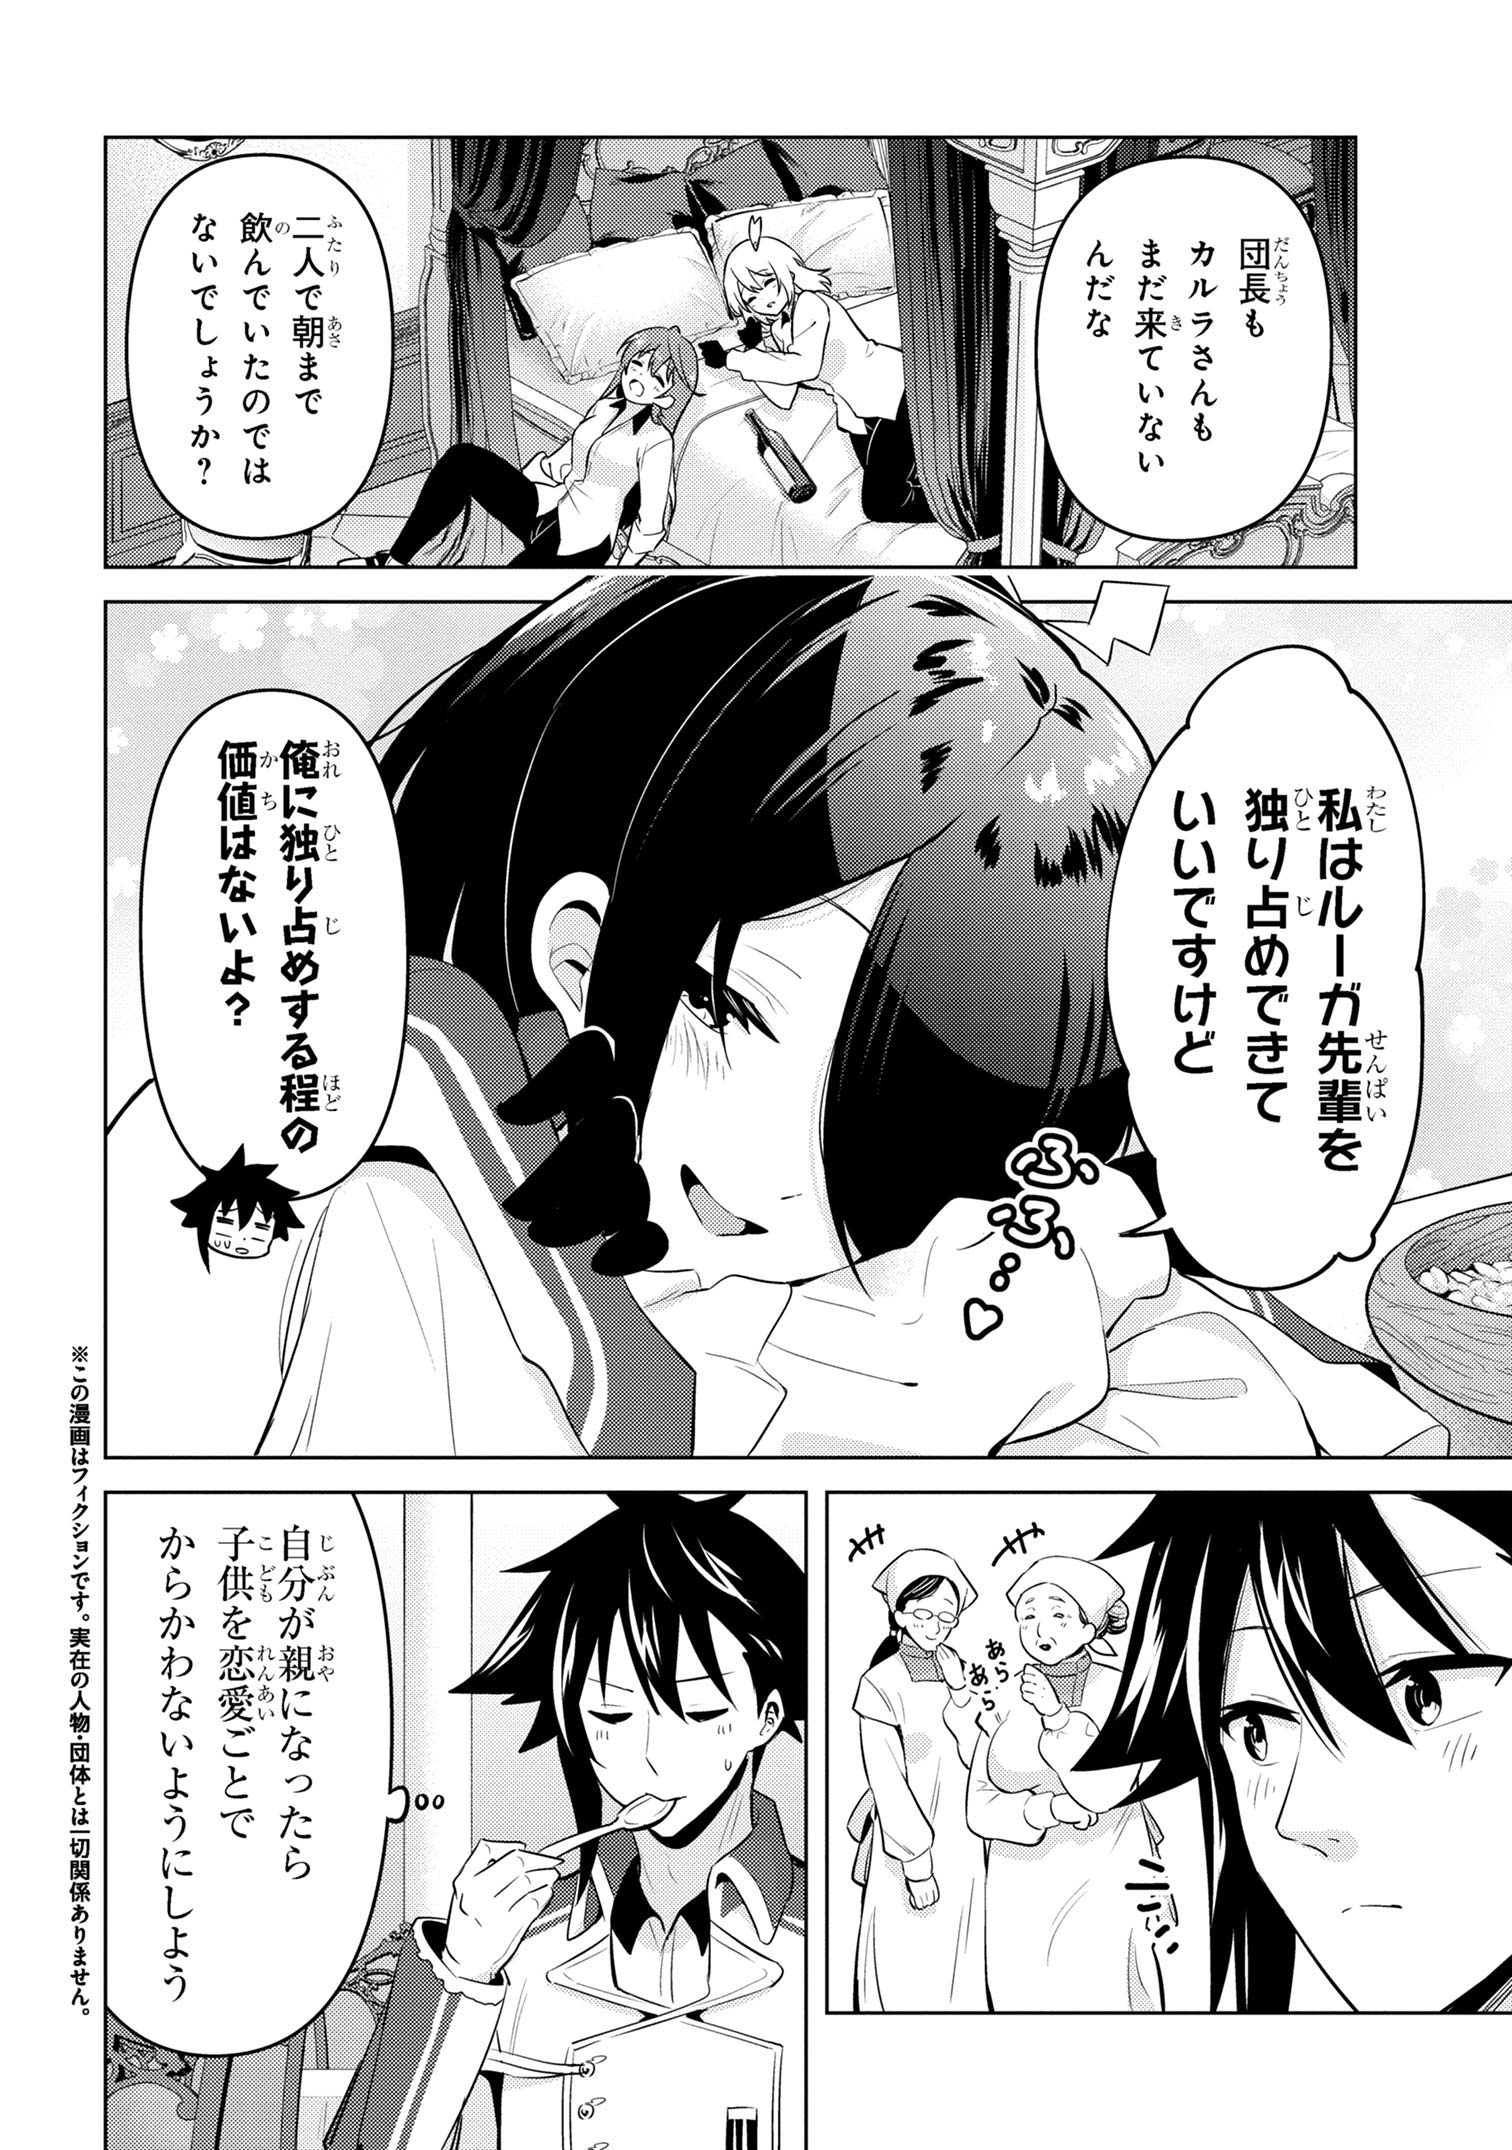 Sekishi ni Natta kedo Danchou no Oppai ga Sugosugite Kokoro ga Kiyomerarenai - Chapter 30 - Page 2